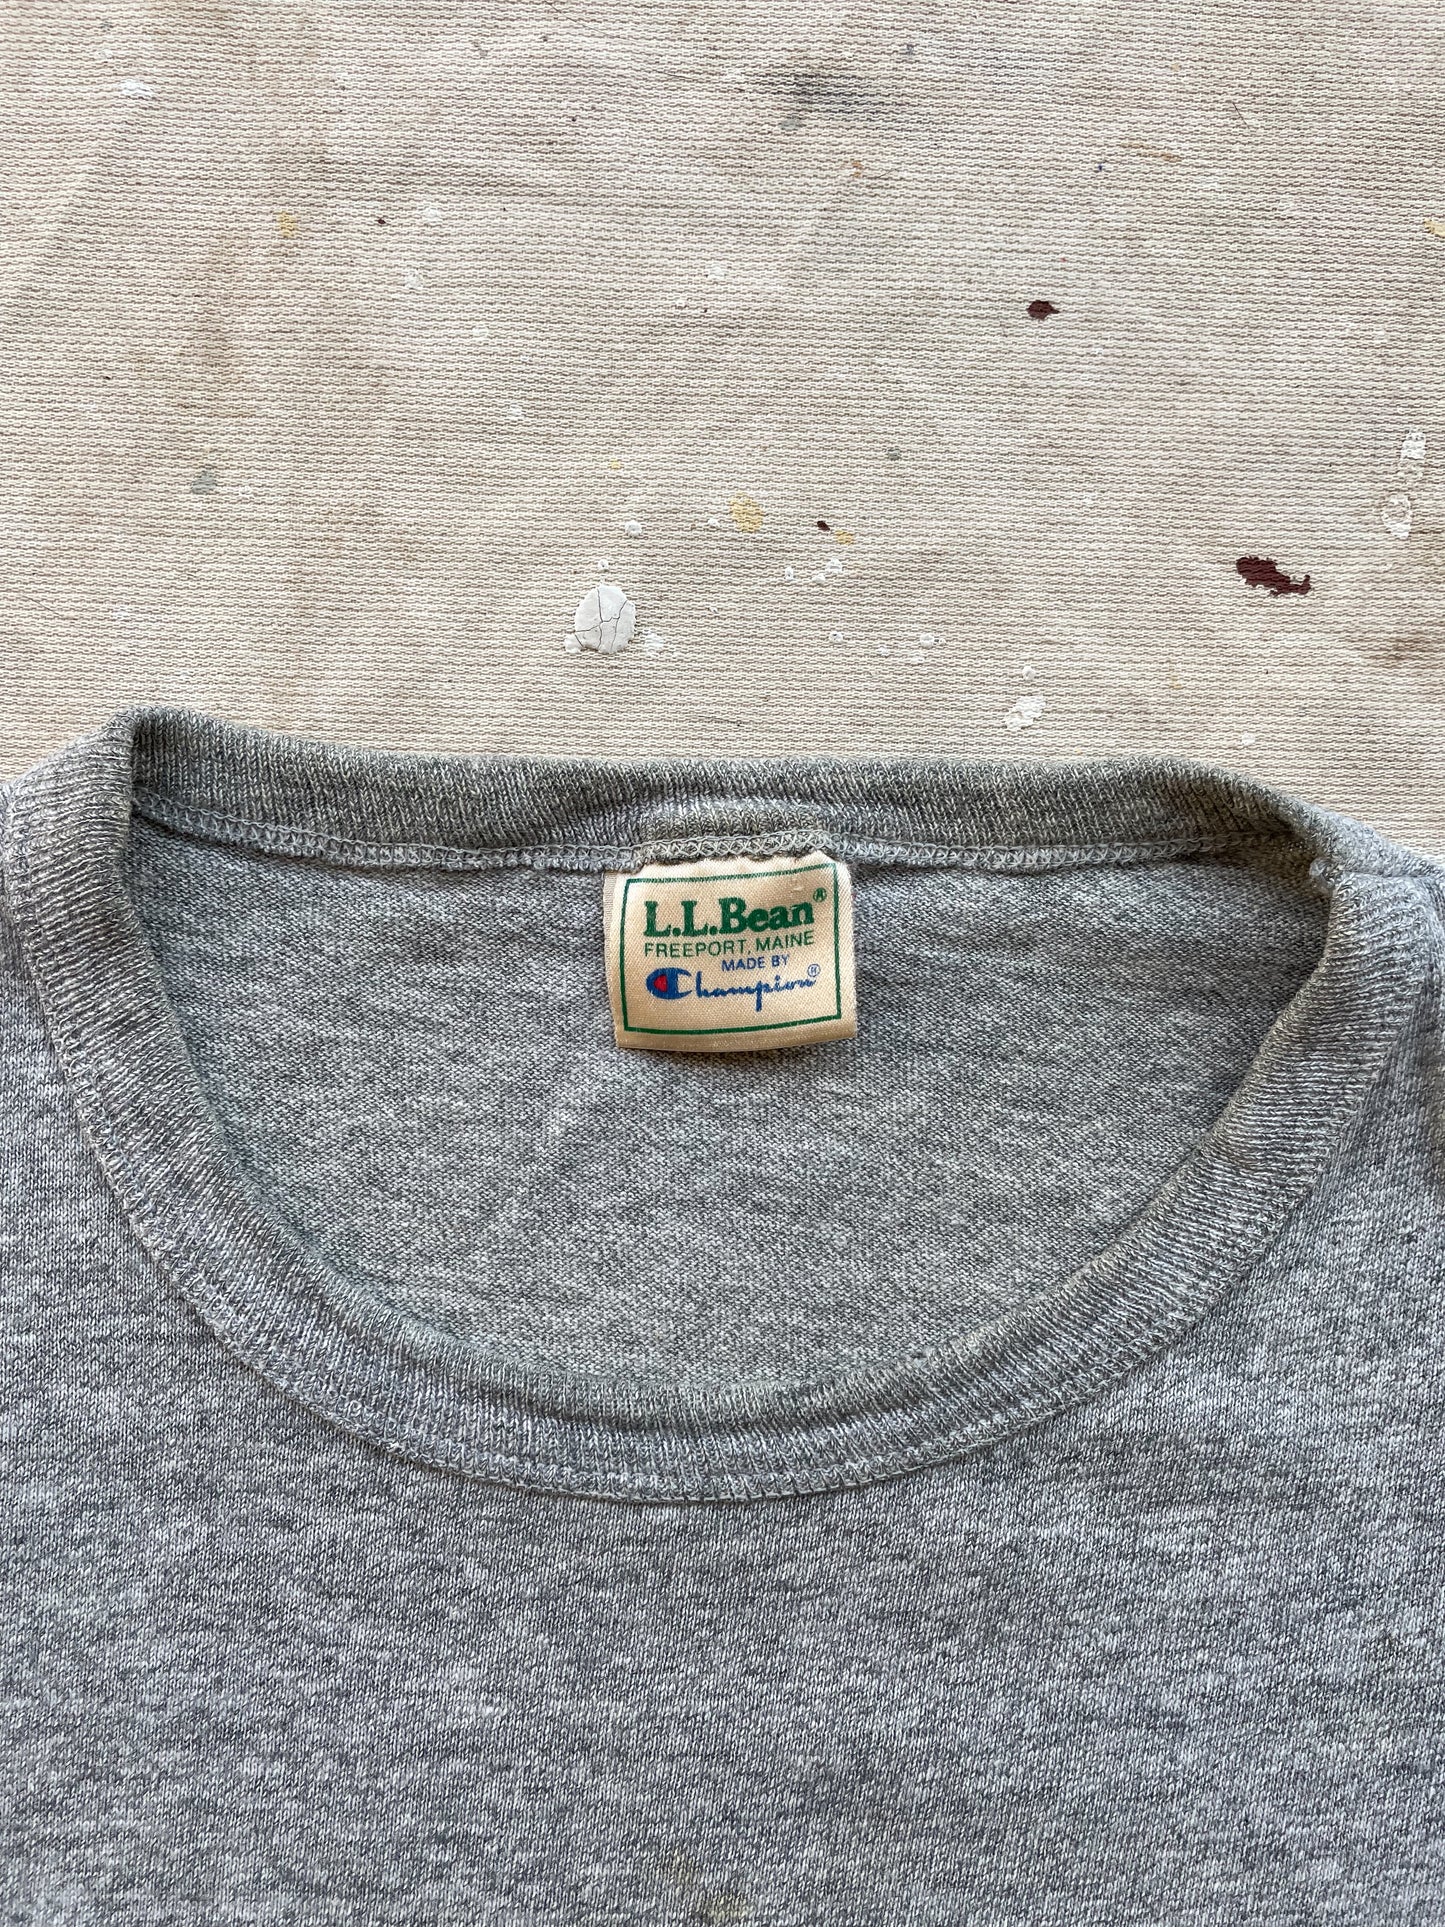 L.L. Bean x Champion T-Shirt—[L]